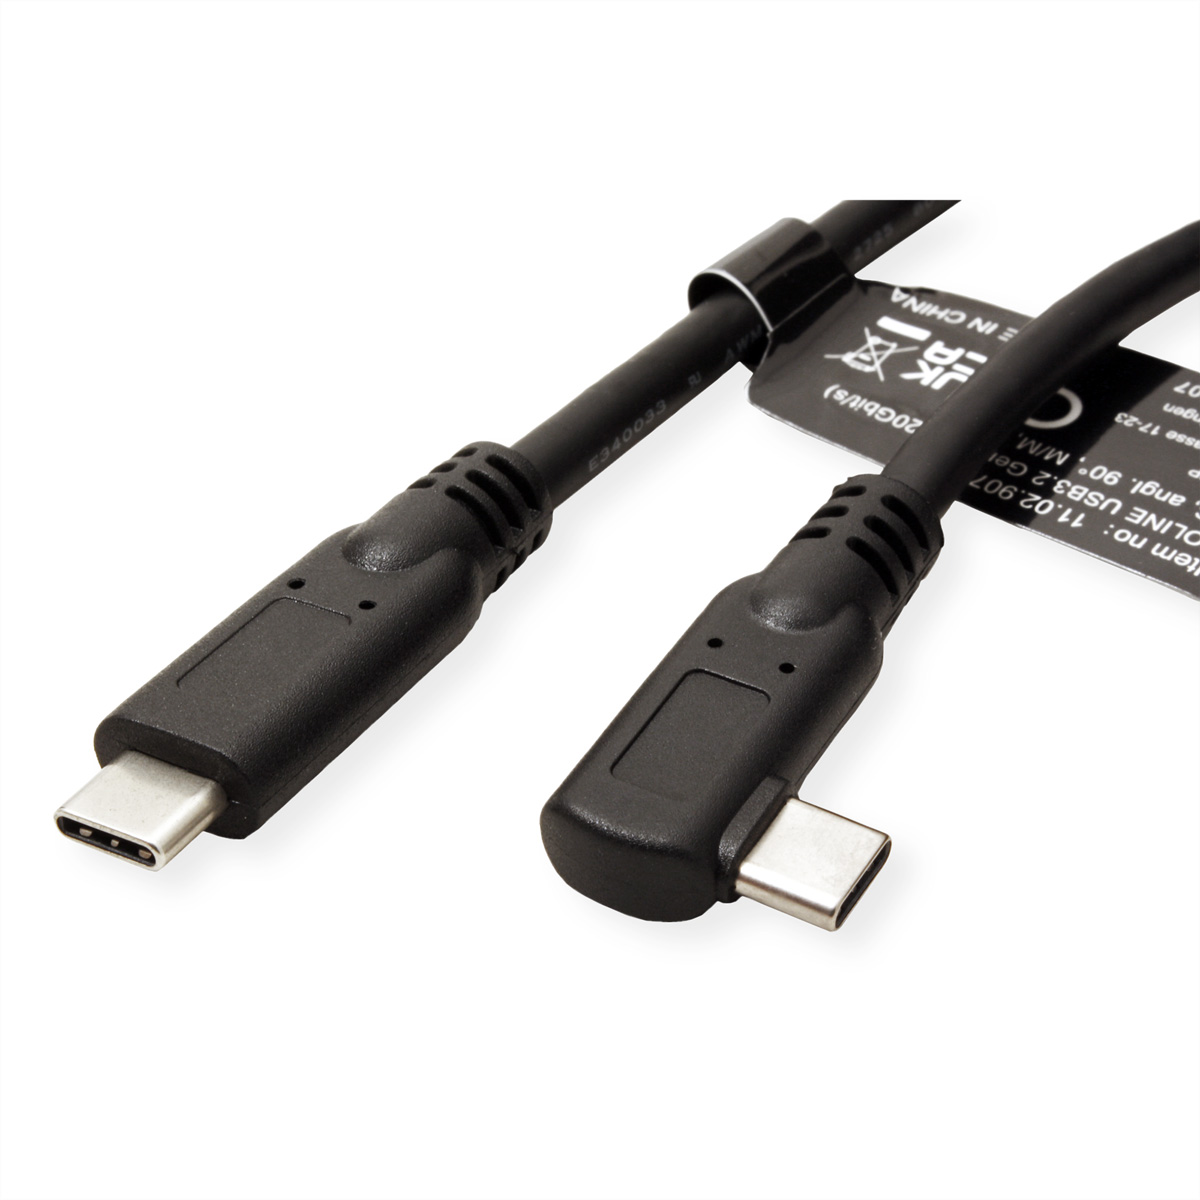 ROLINE Kabel Emark, 2x2 ST/ST USB 3.2 3.2 C-C, Gen Kabel, USB